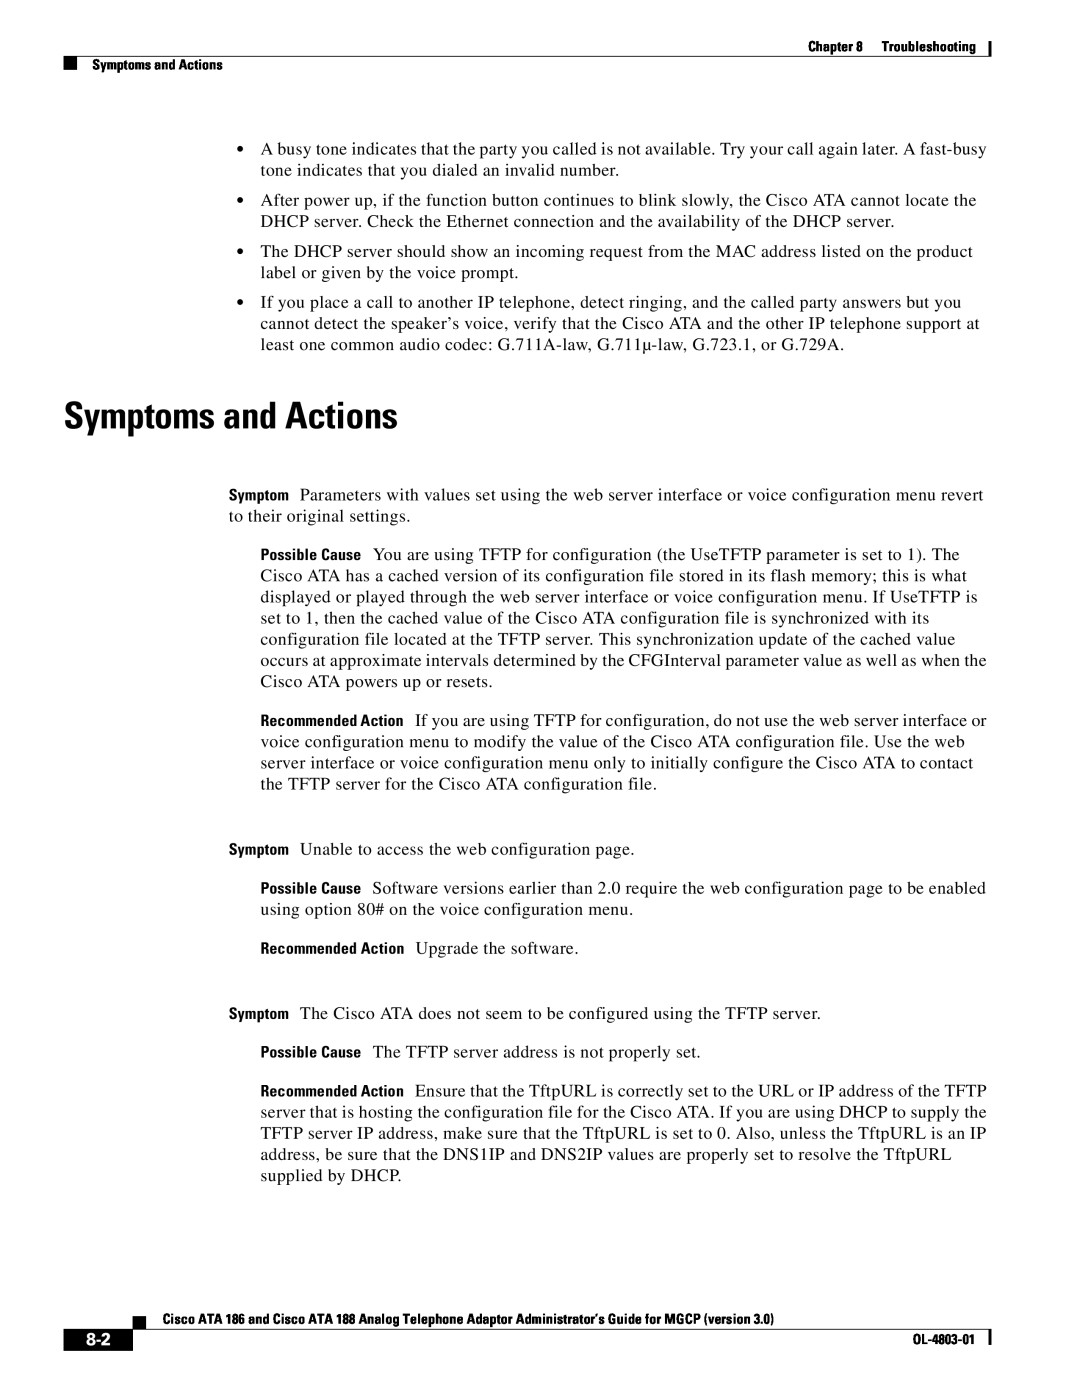 Cisco Systems ATA 186, ATA 188 manual Symptoms and Actions 